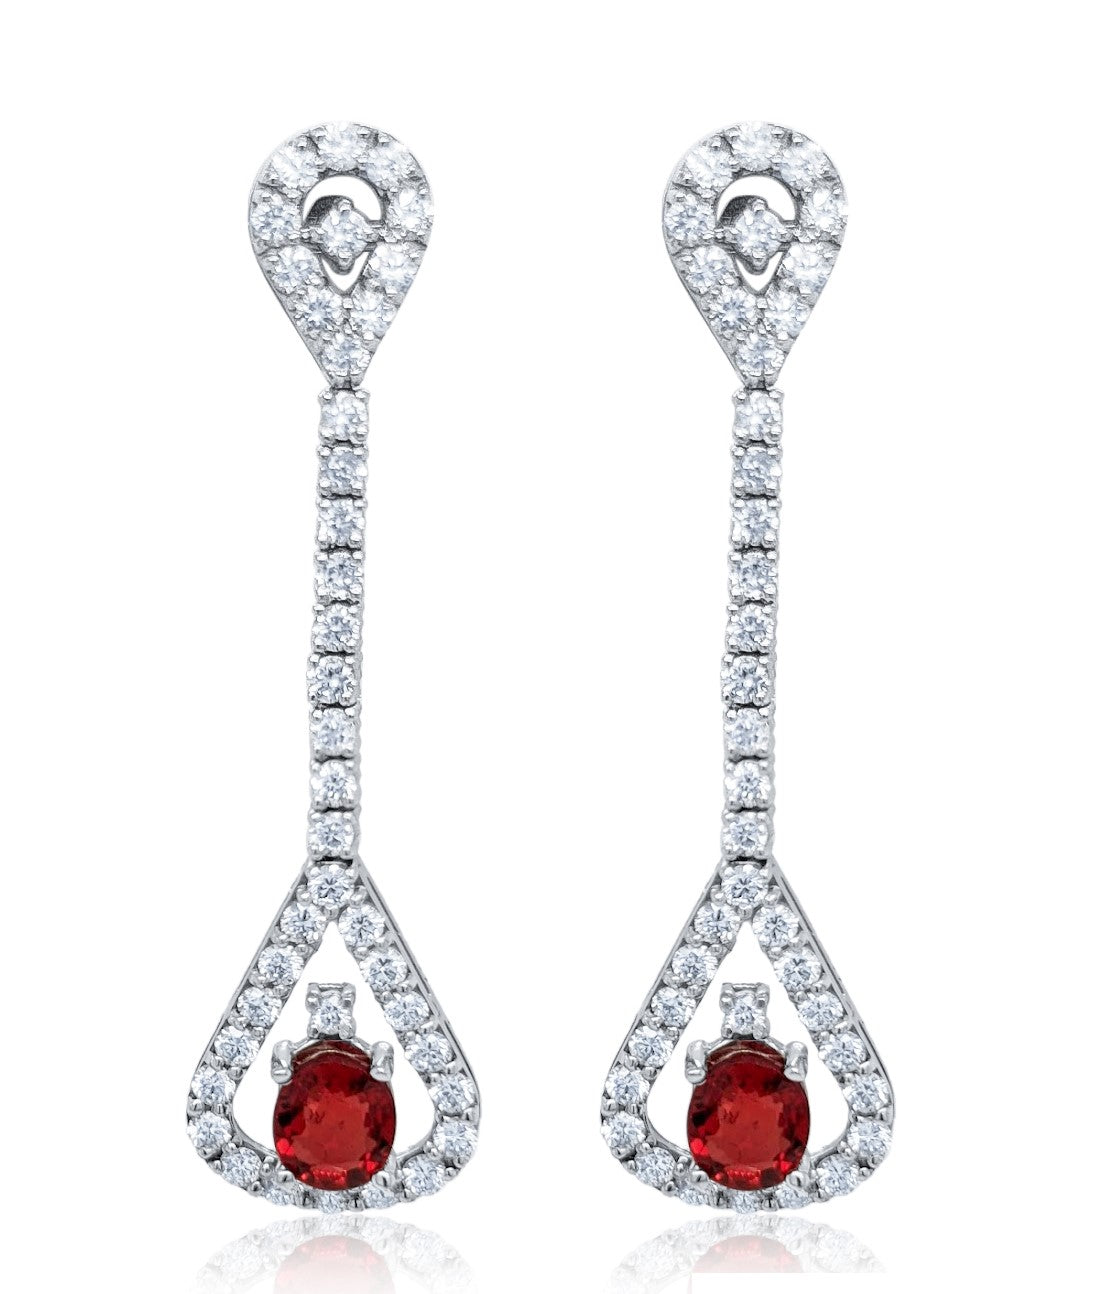 14k White Gold Diamond Earring with Ruby V0336